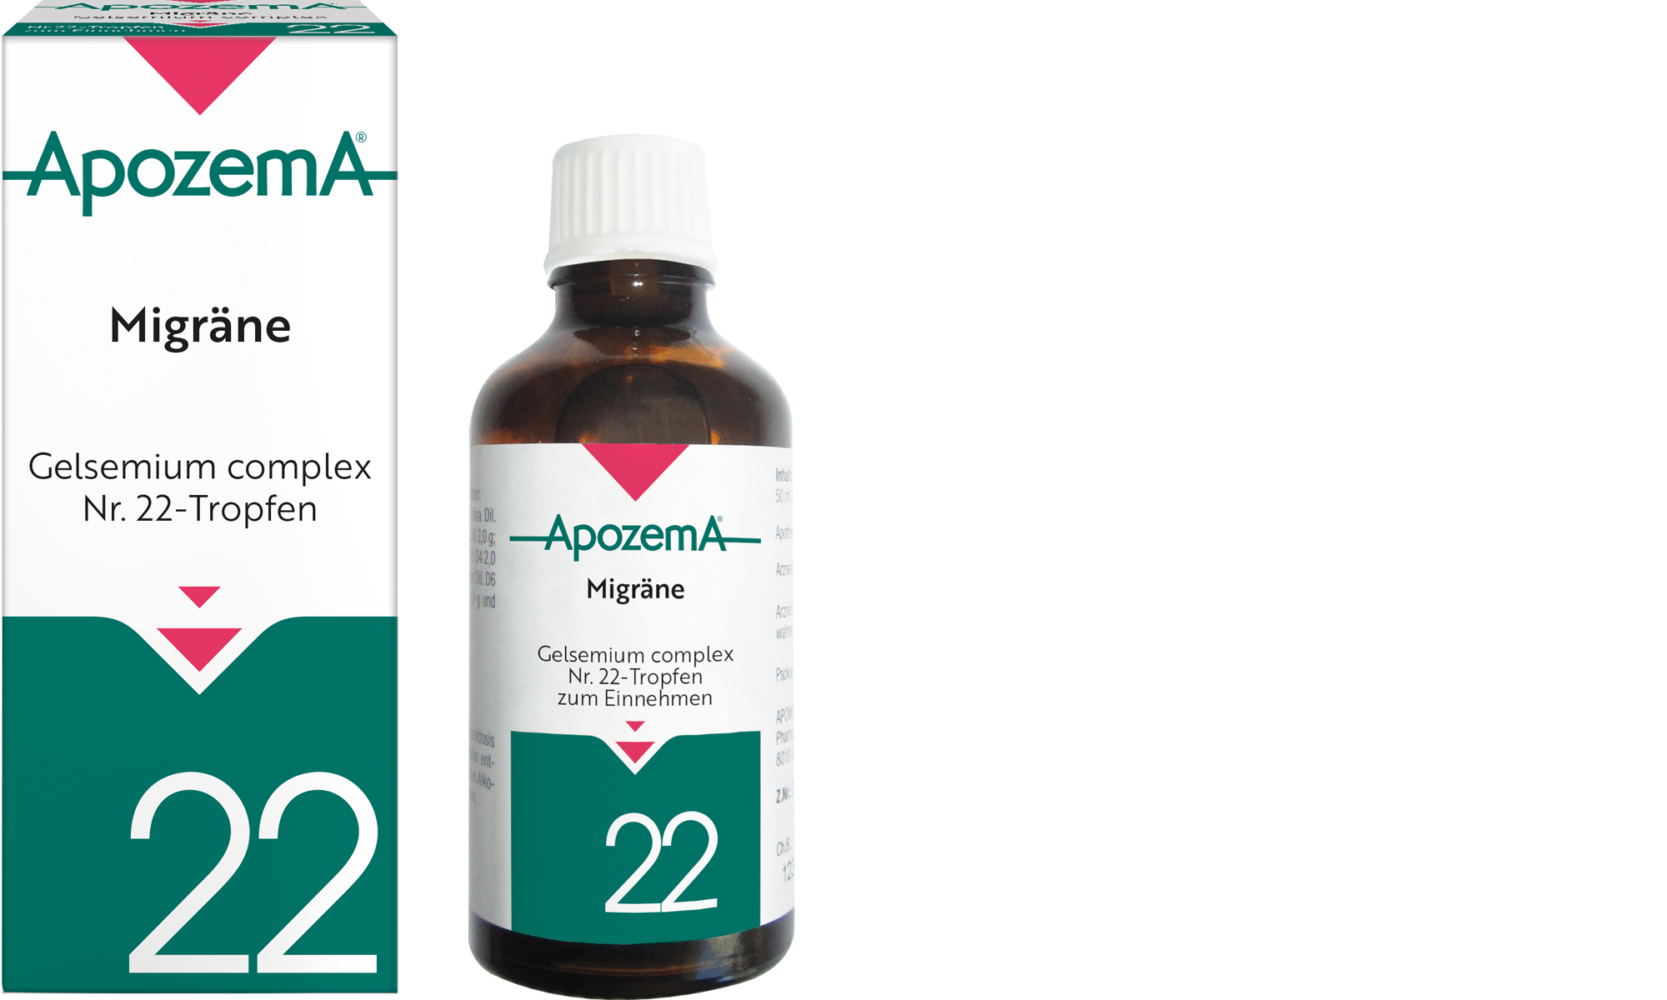 Apozema® Migräne; Gelsemium complex Nr. 22-Tropfen